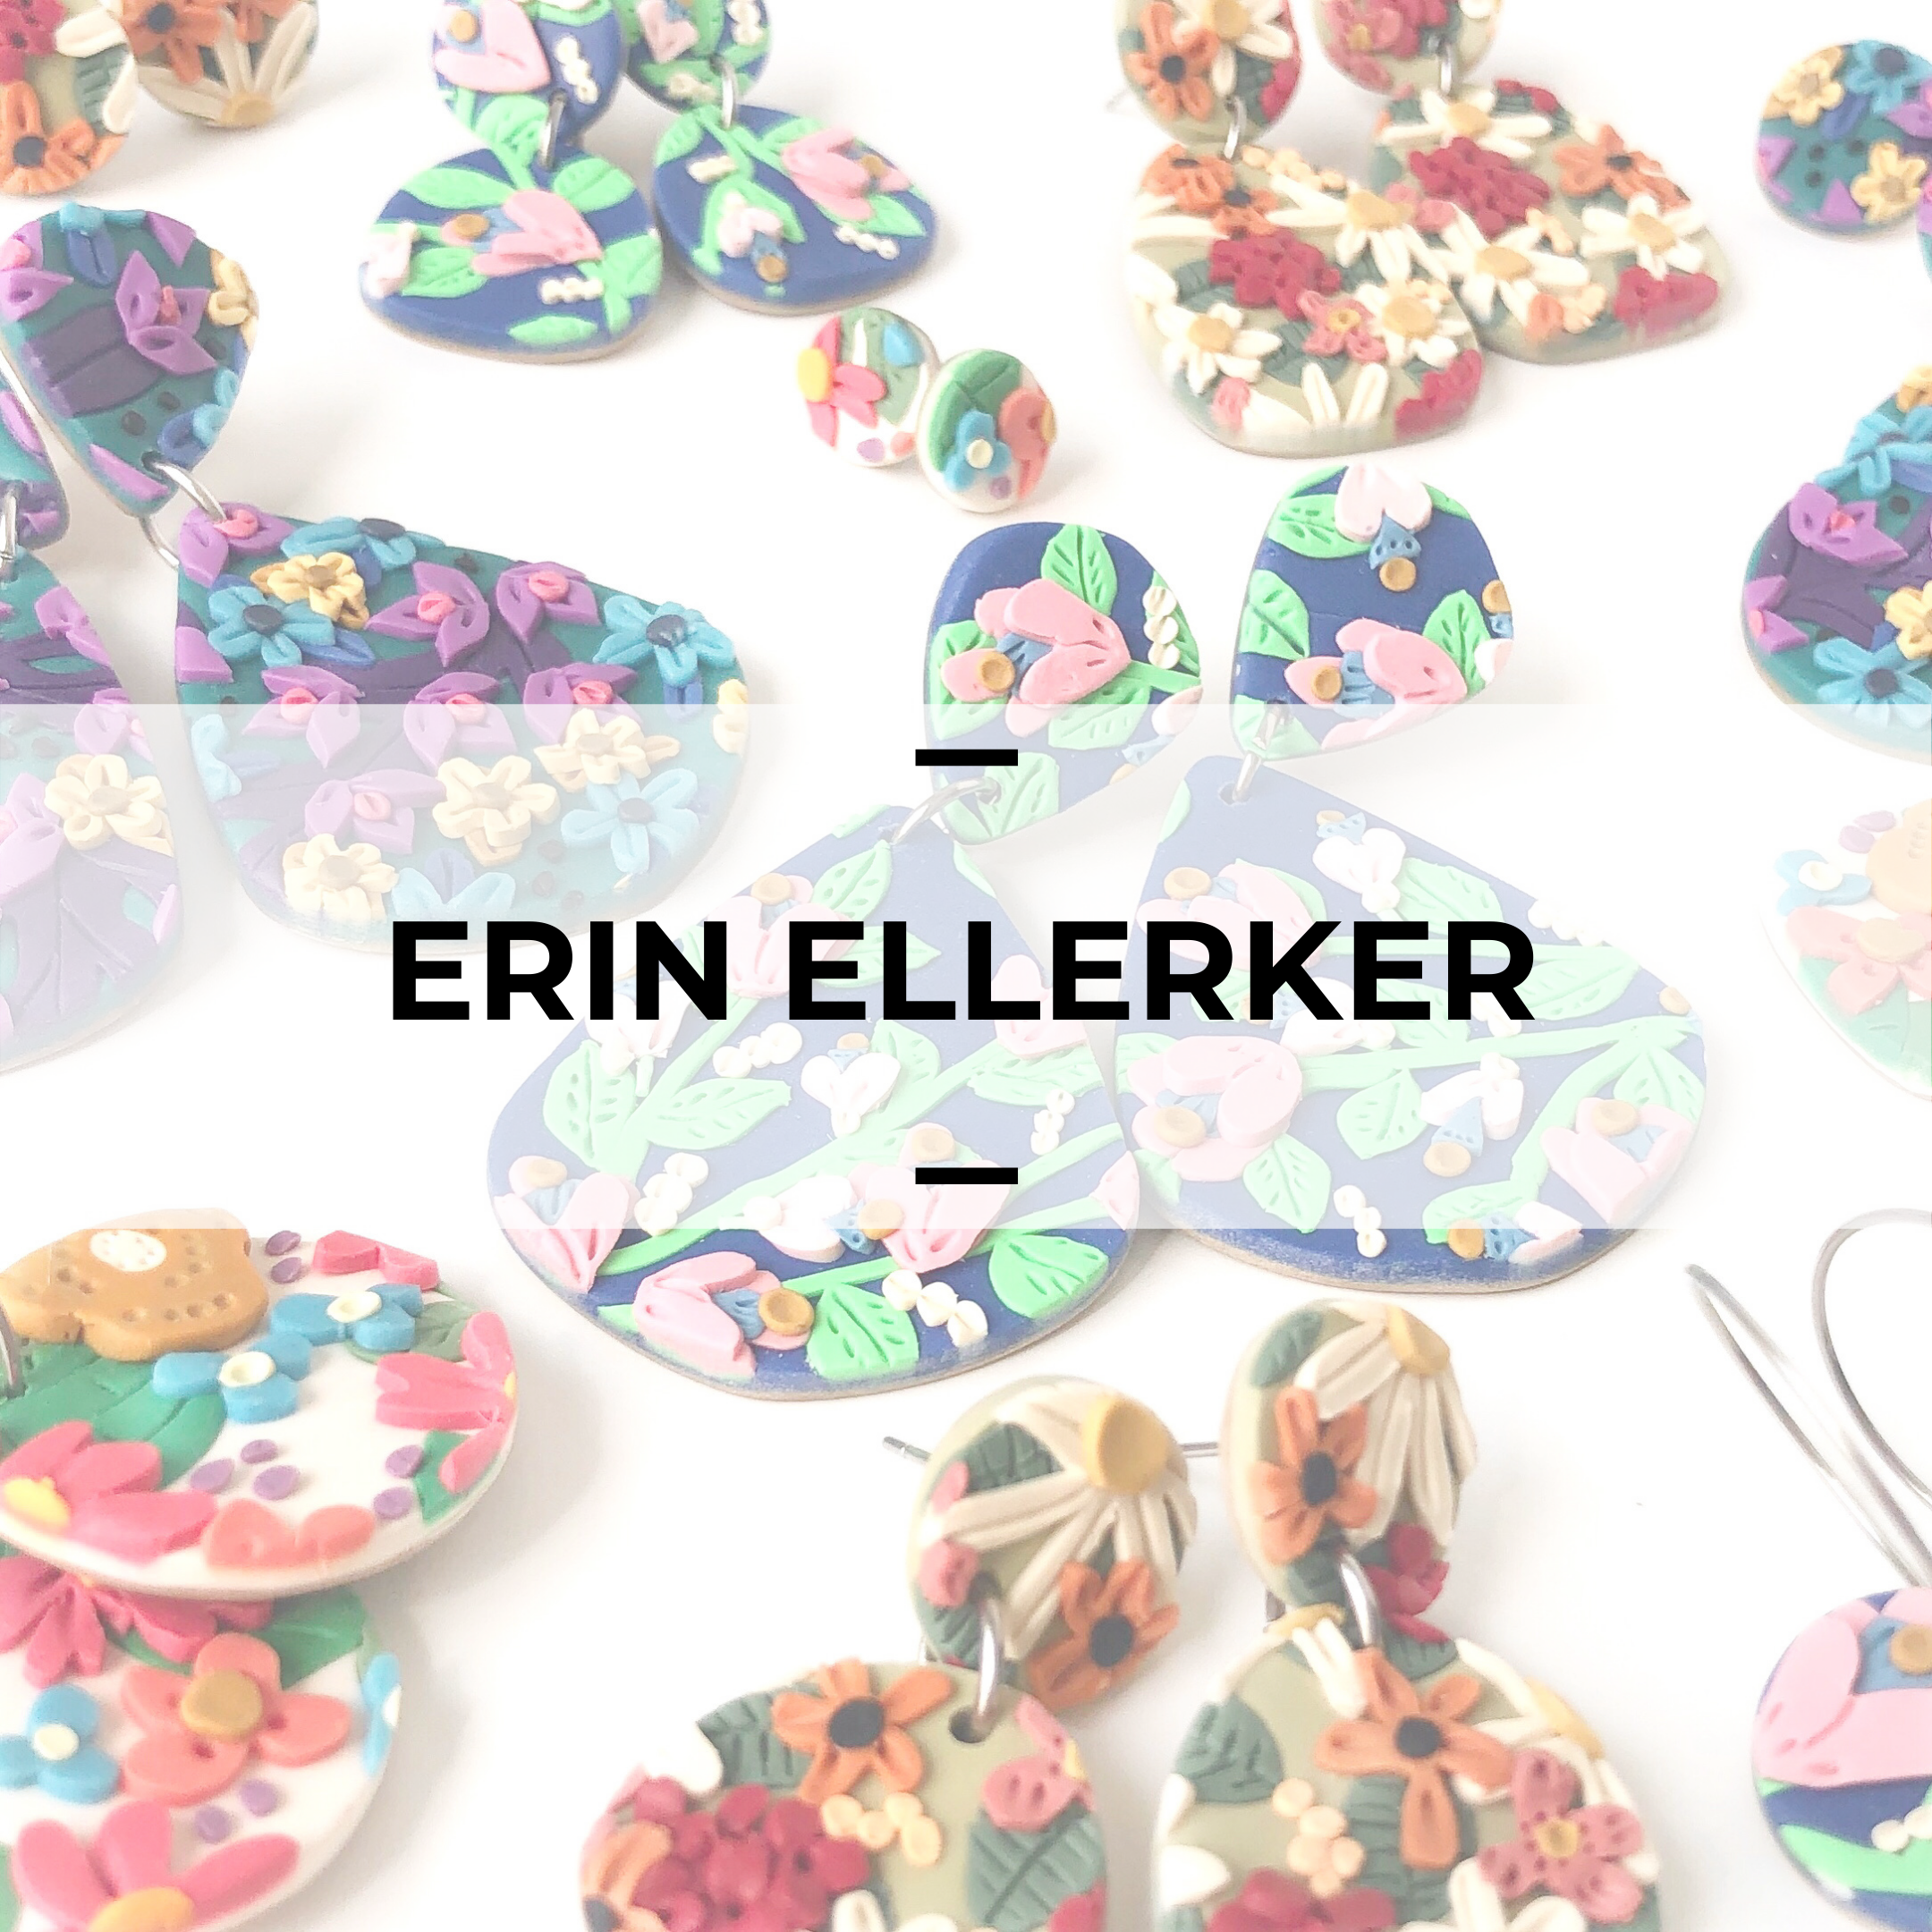 Erin Ellerker